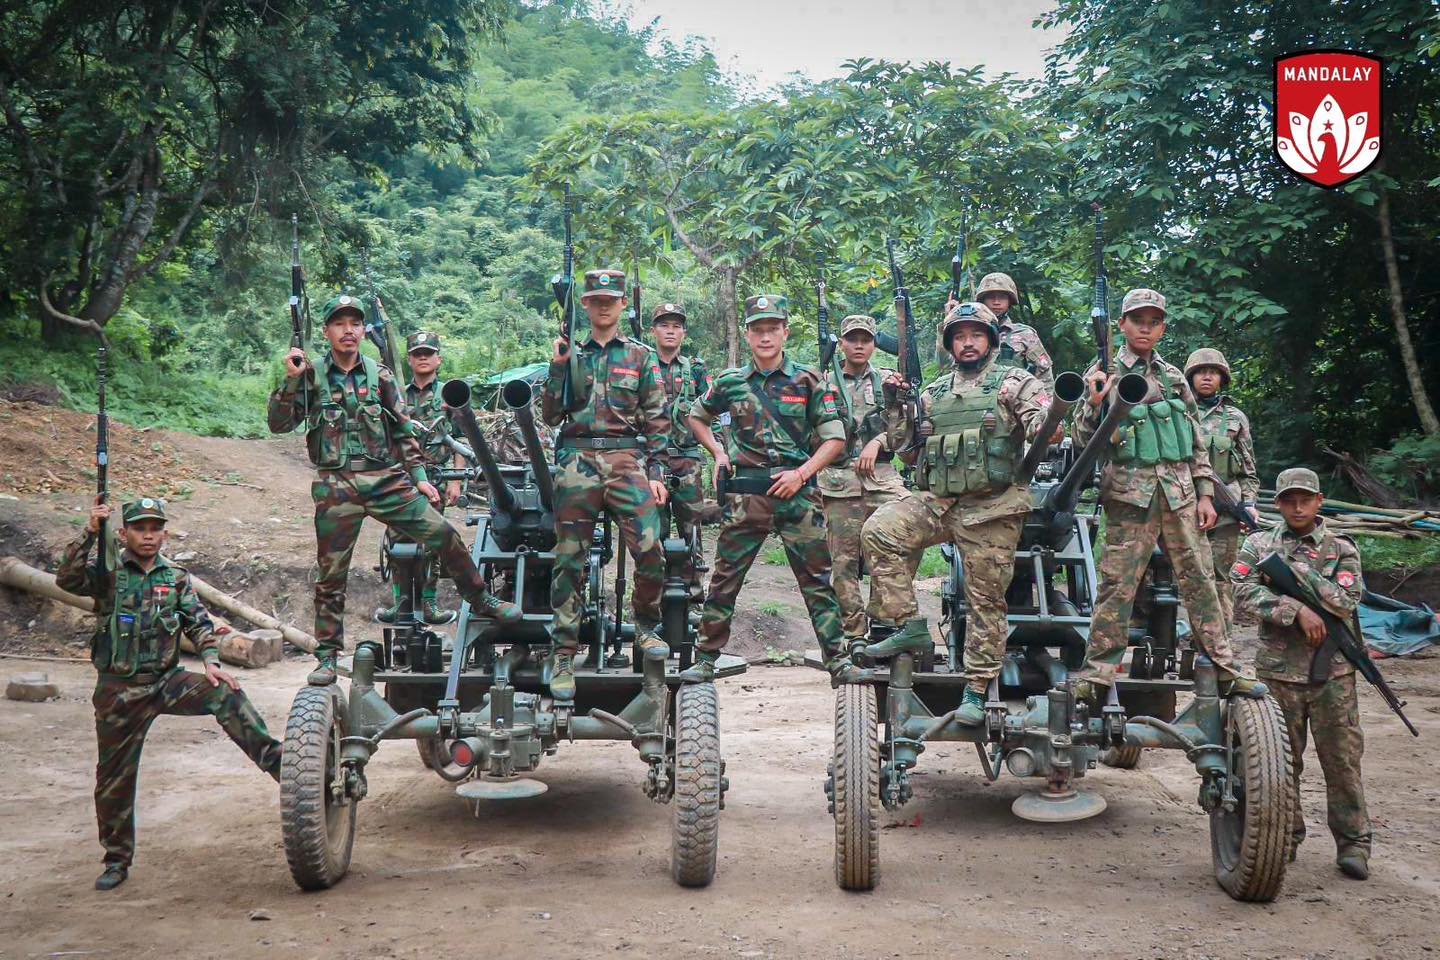 ပြည်သူ့ကာကွယ်ရေးတပ်မတော် (မန္တလေး) က တပ်ဖွဲ့ဝင်တွေကို စစ်မြေပြင်မှာ တွေ့ရတဲ့ မြင်ကွင်း